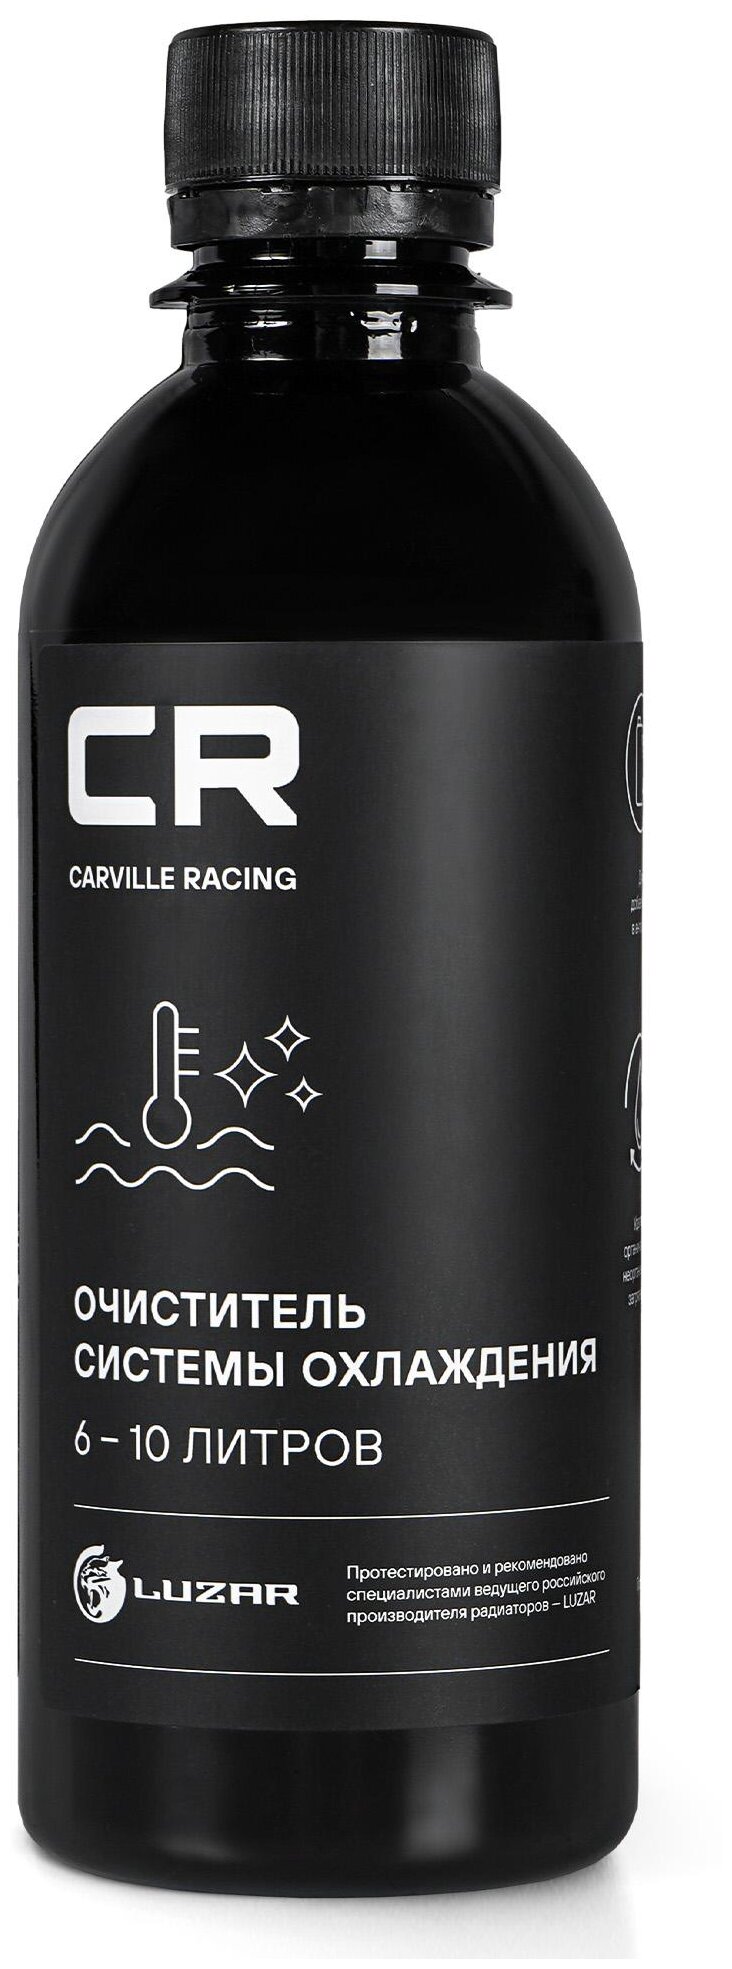 Очиститель системы охлаждения Carville Racing 0,28л (в антифриз 6-10л) Carville Racing S2018025